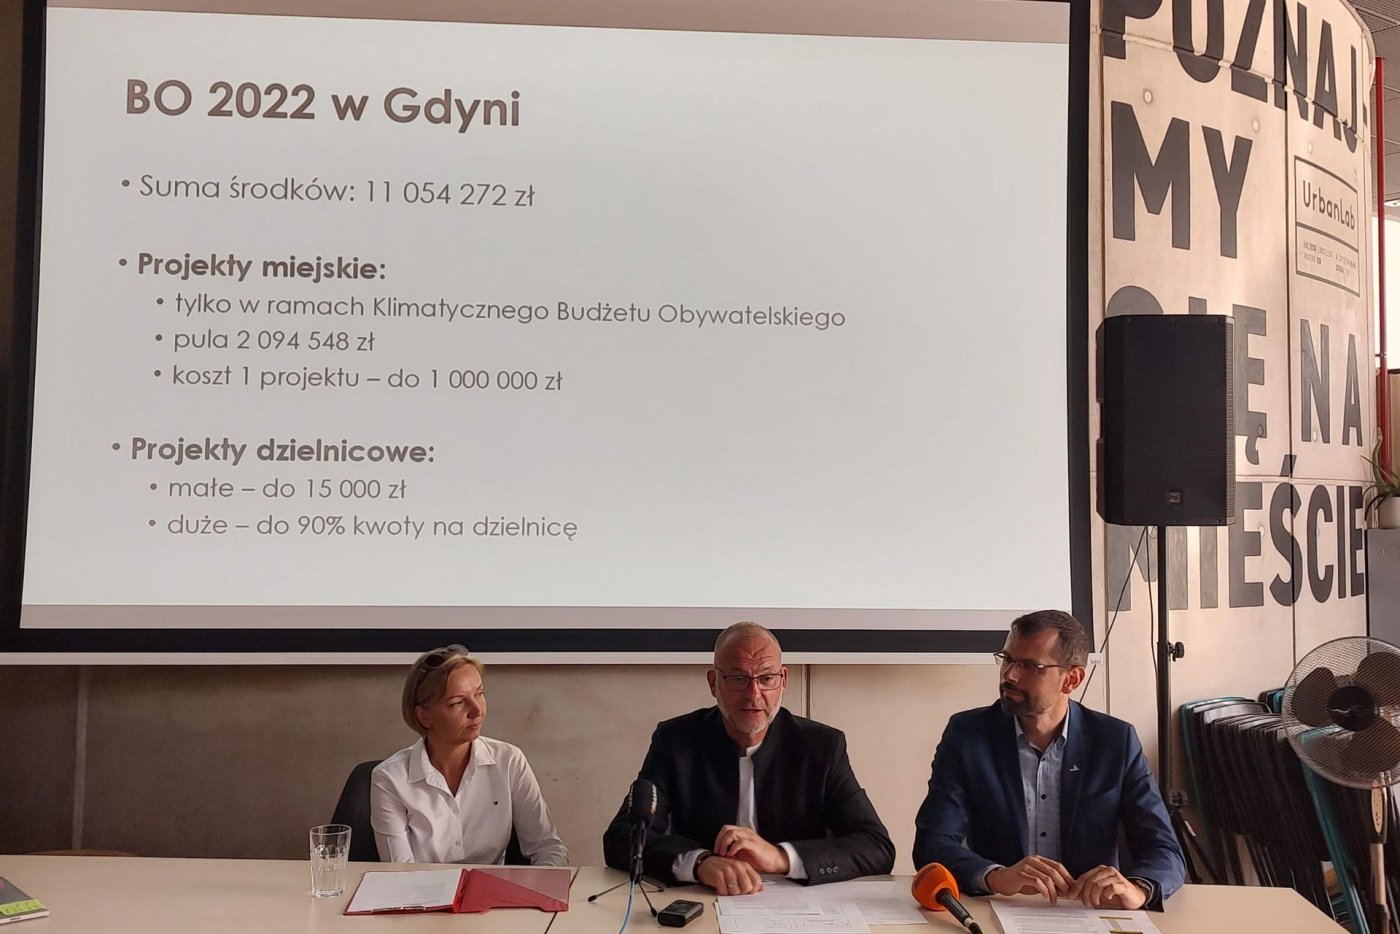 Konferencja BO2022. Od lewej: Magdalena Warmowska, Michał Guć i Lechosław Dzierżak